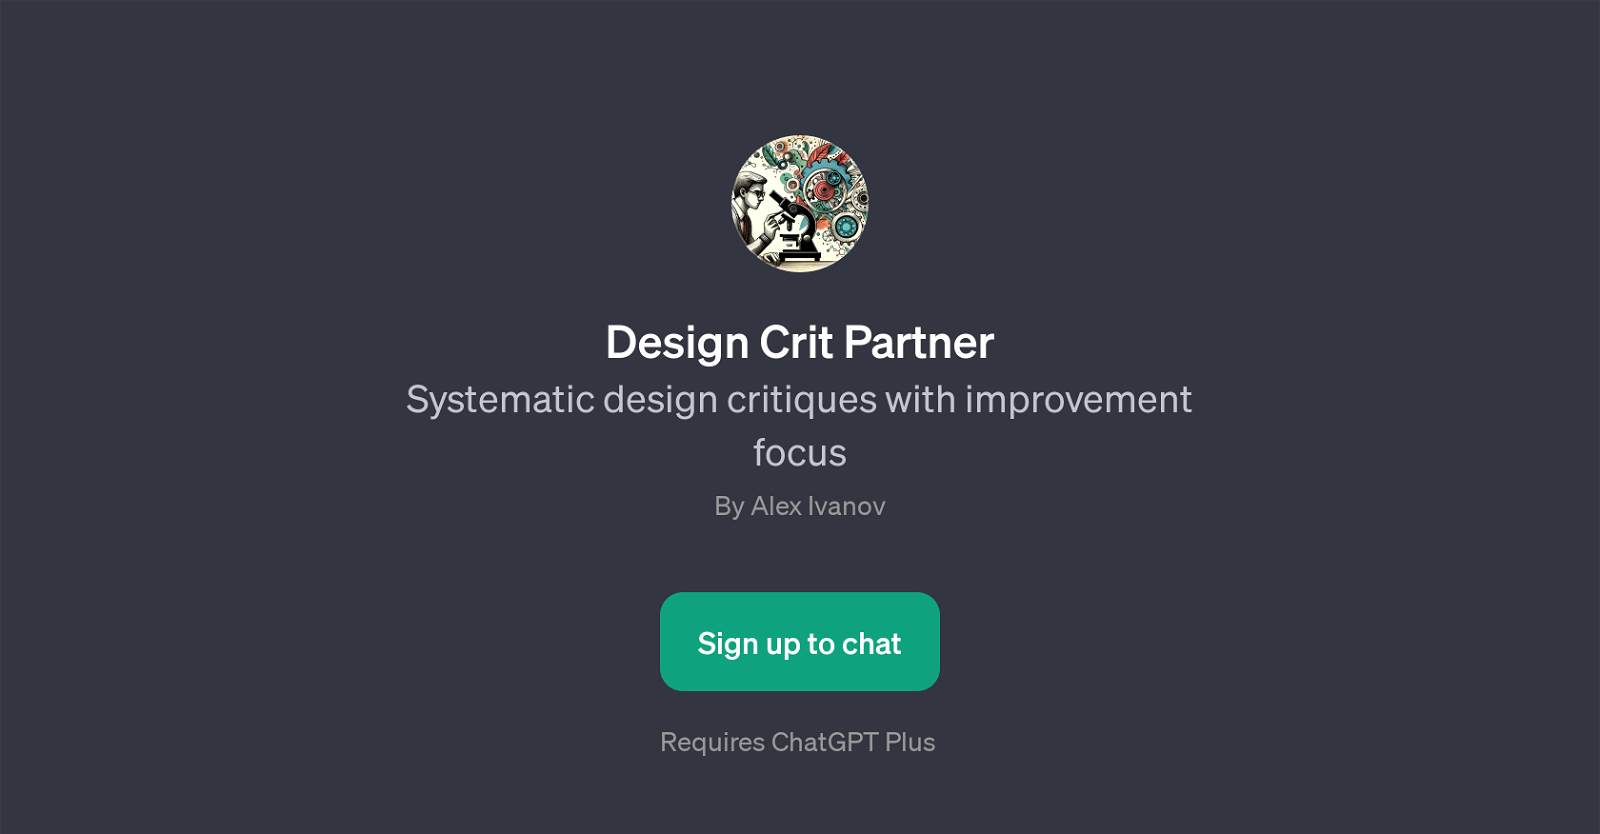 Design Crit Partner website